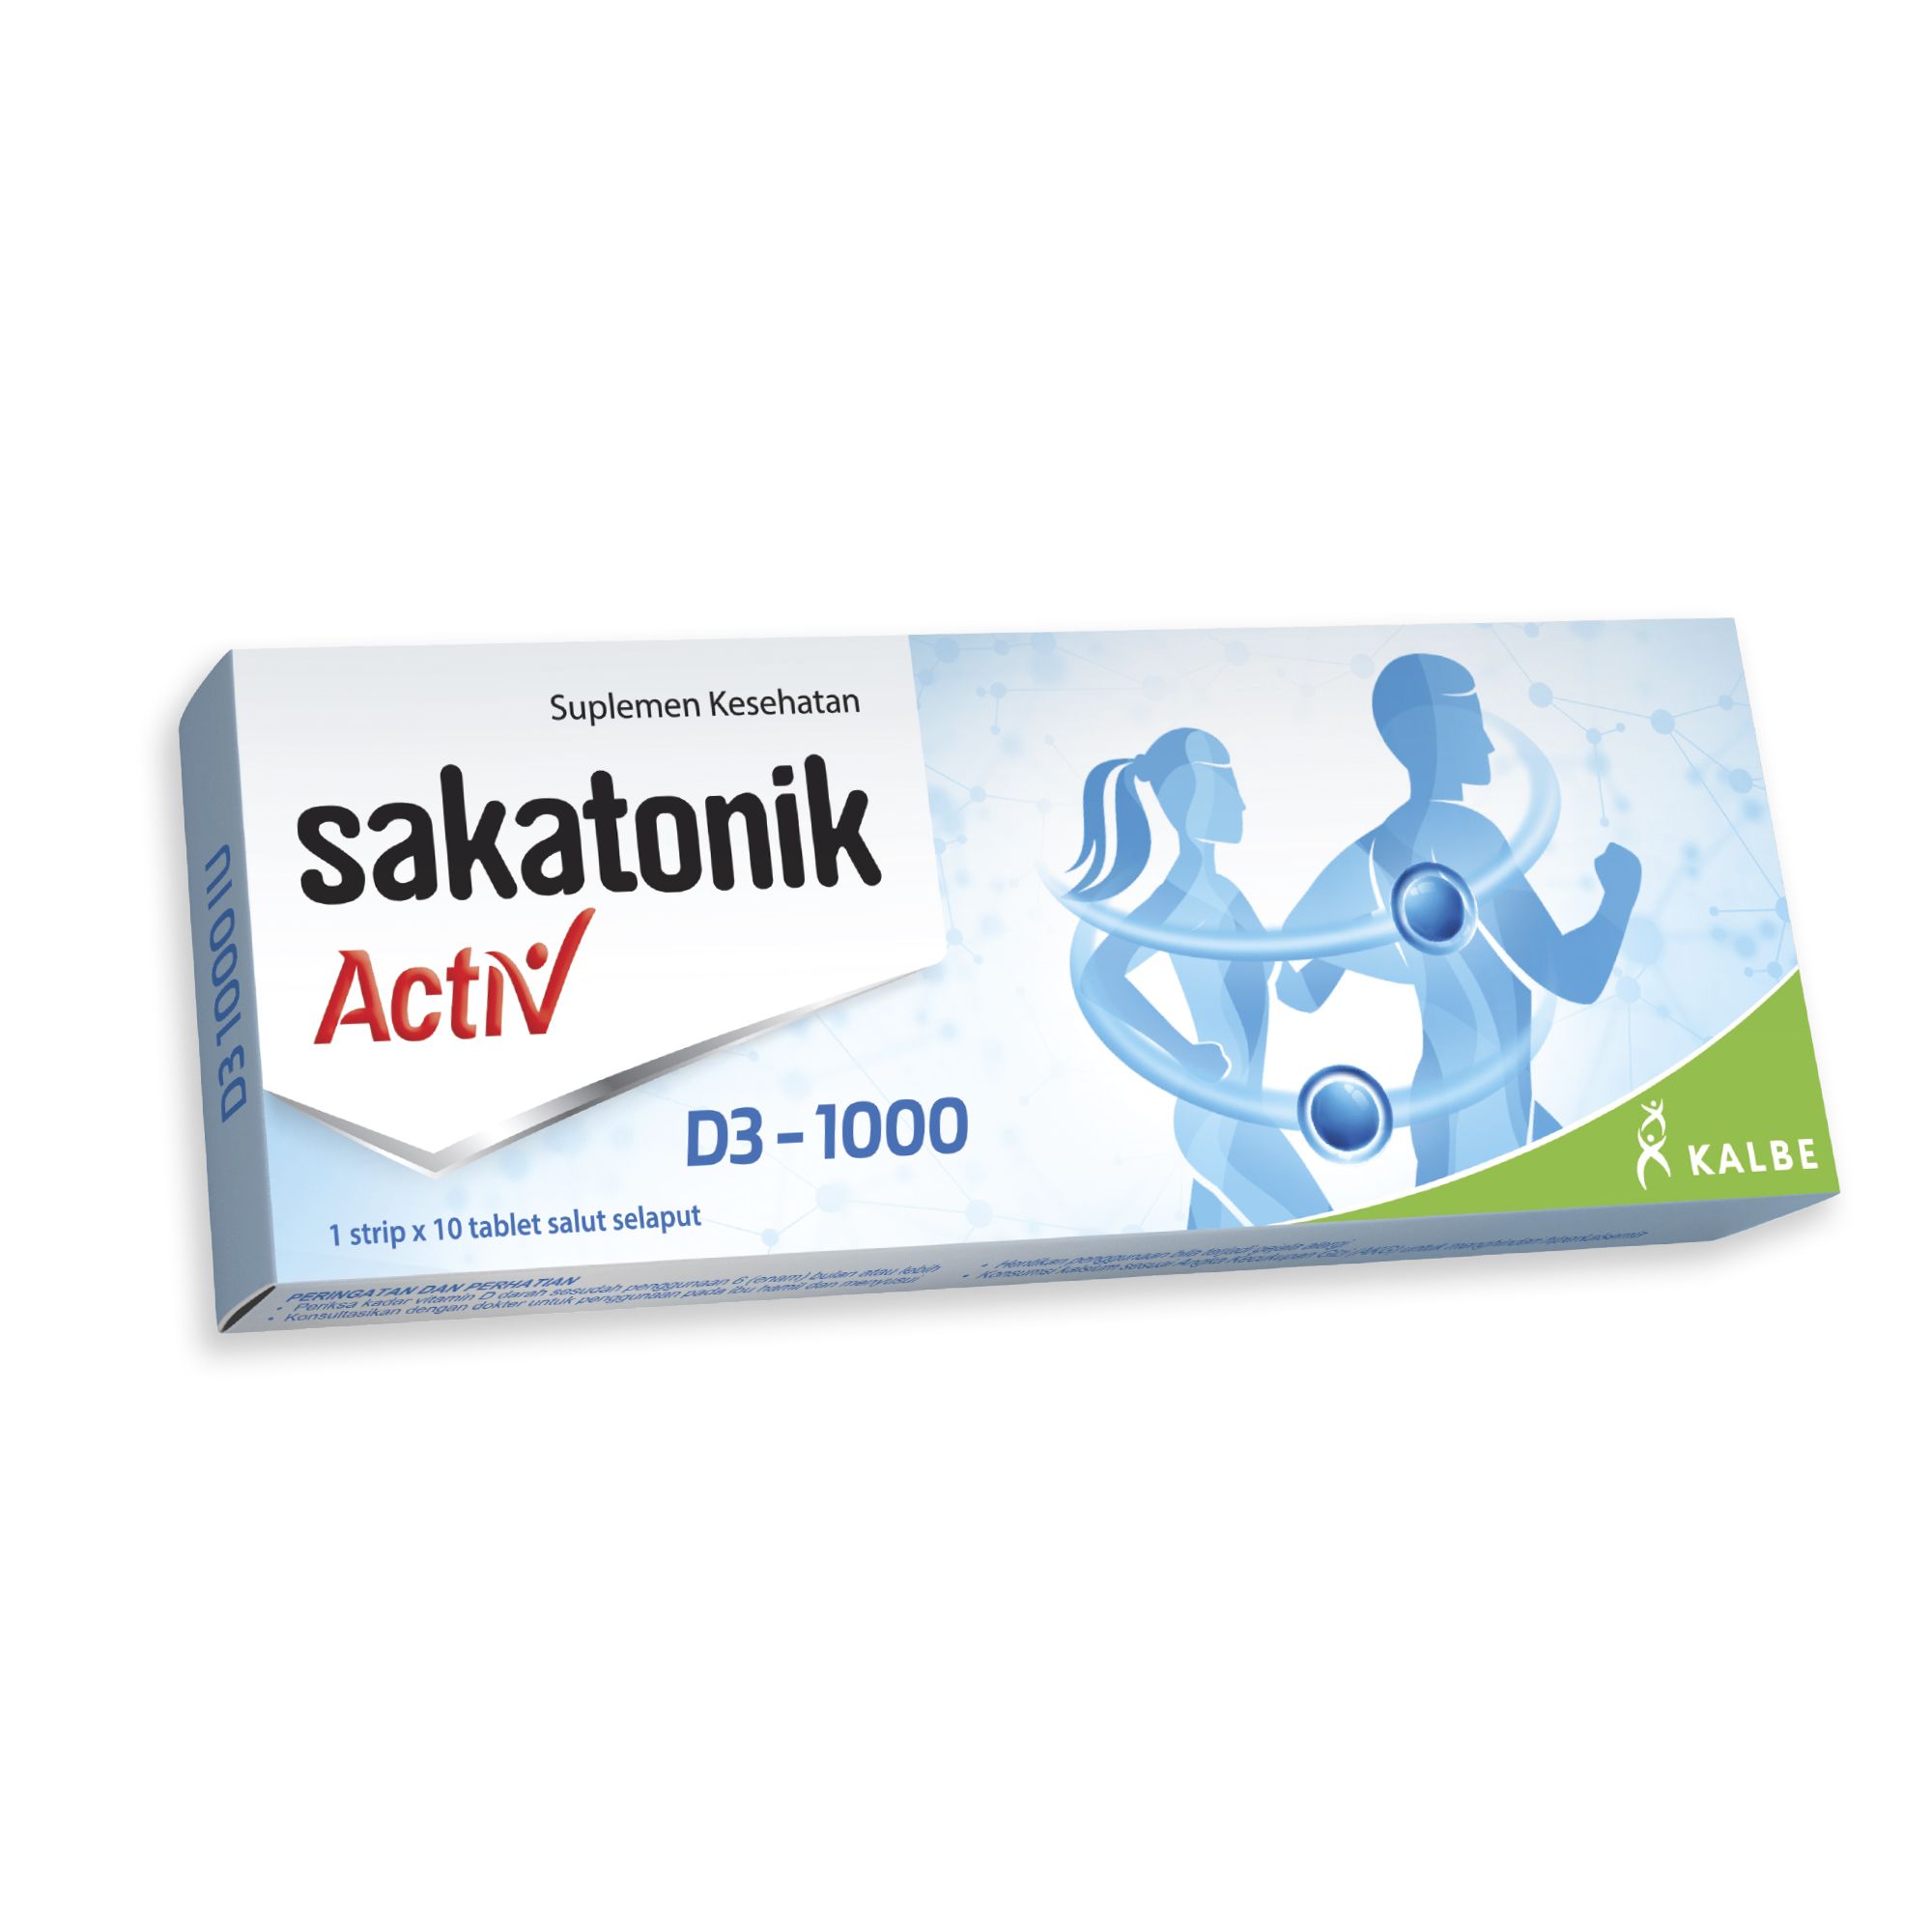 Sakatonik Activ D3 1000 - Vitamin D3 1000 IU 1 Box 10 Tablet - 1